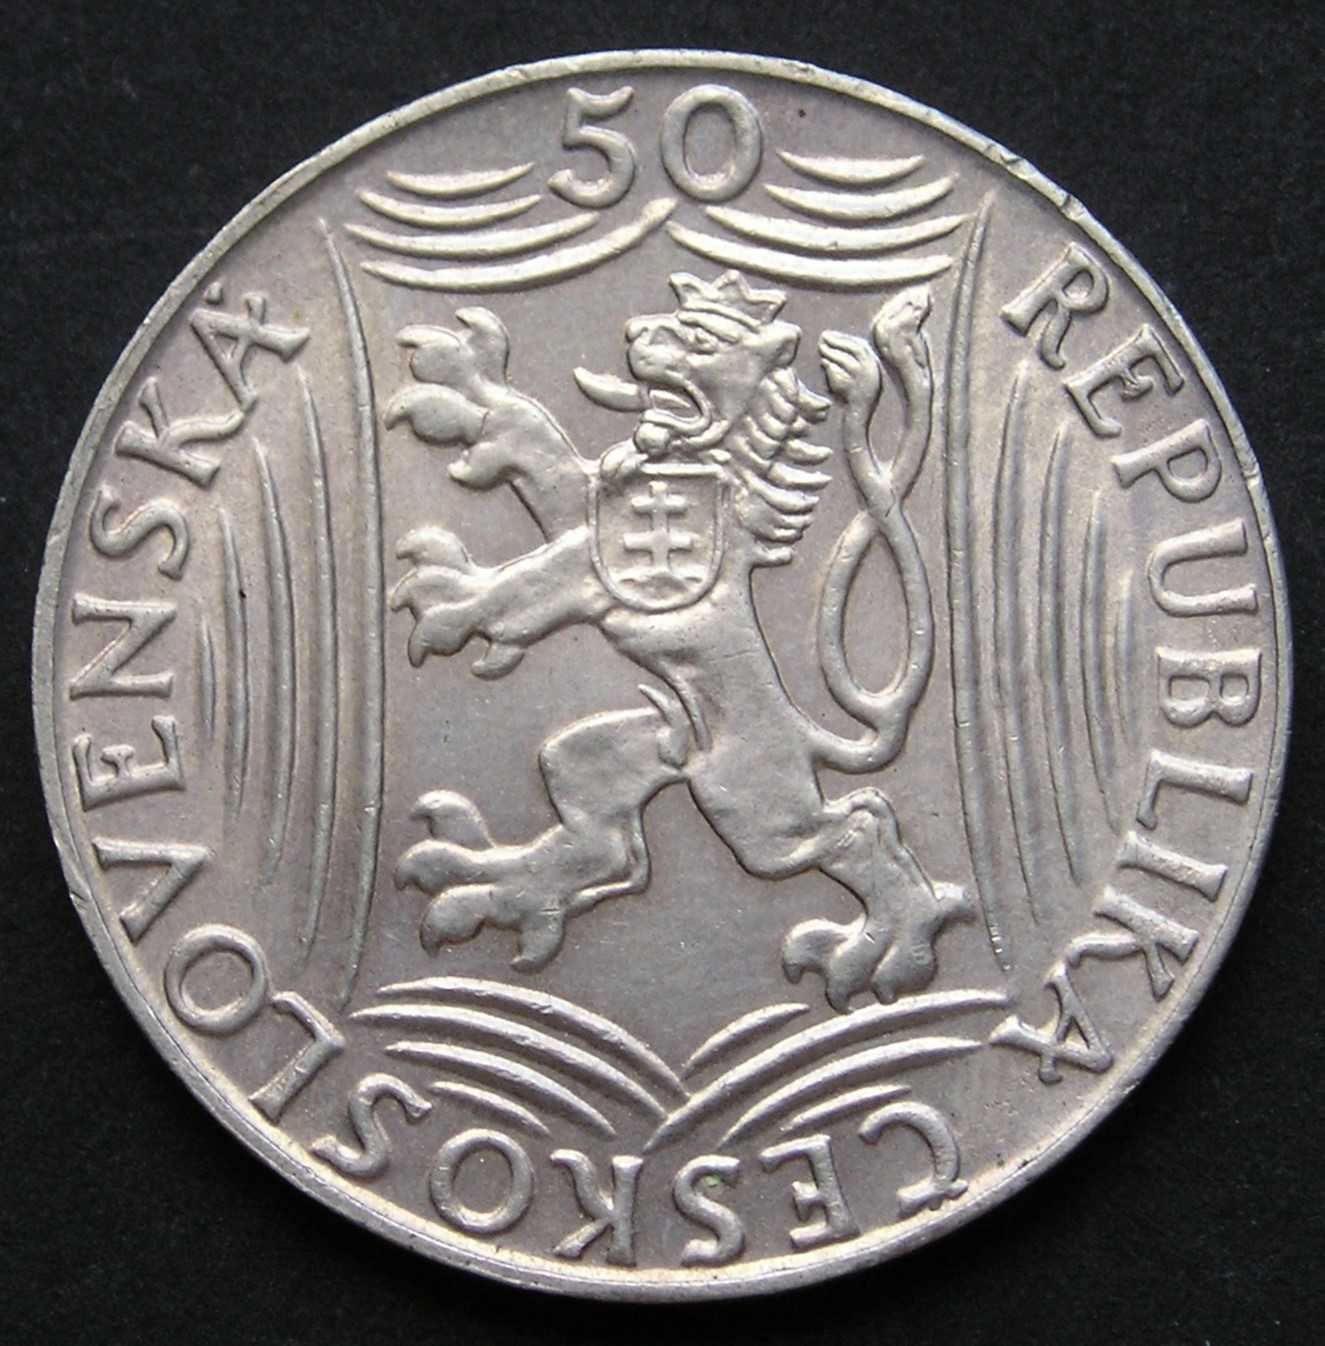 Czechosłowacja 50 koron 1949 - Józef Stalin - srebro